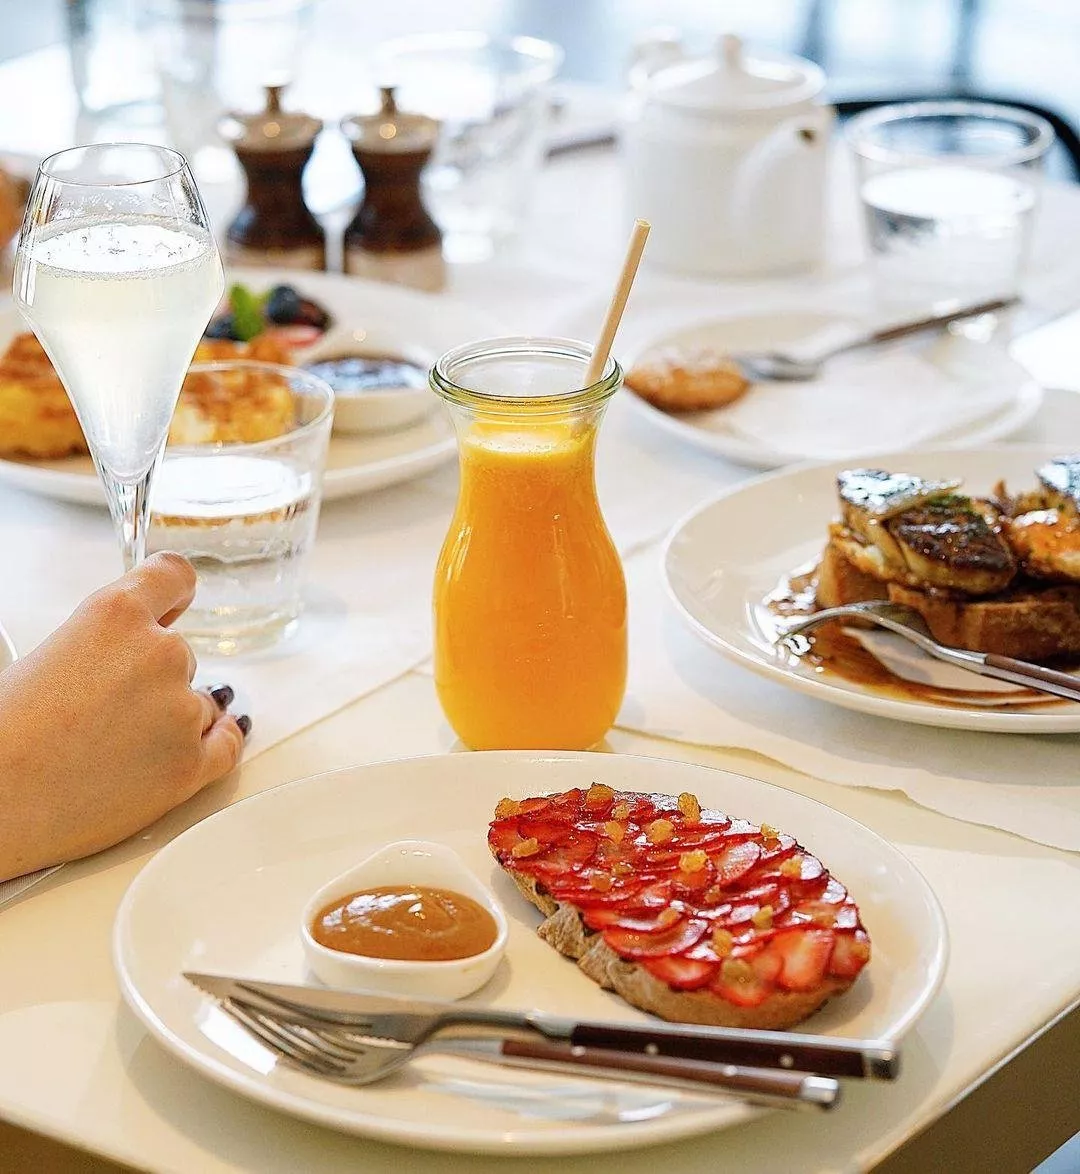 أفضل 12 مطعم في دبي لتناول الفطور، عليكِ زيارتها في أقرب وقت